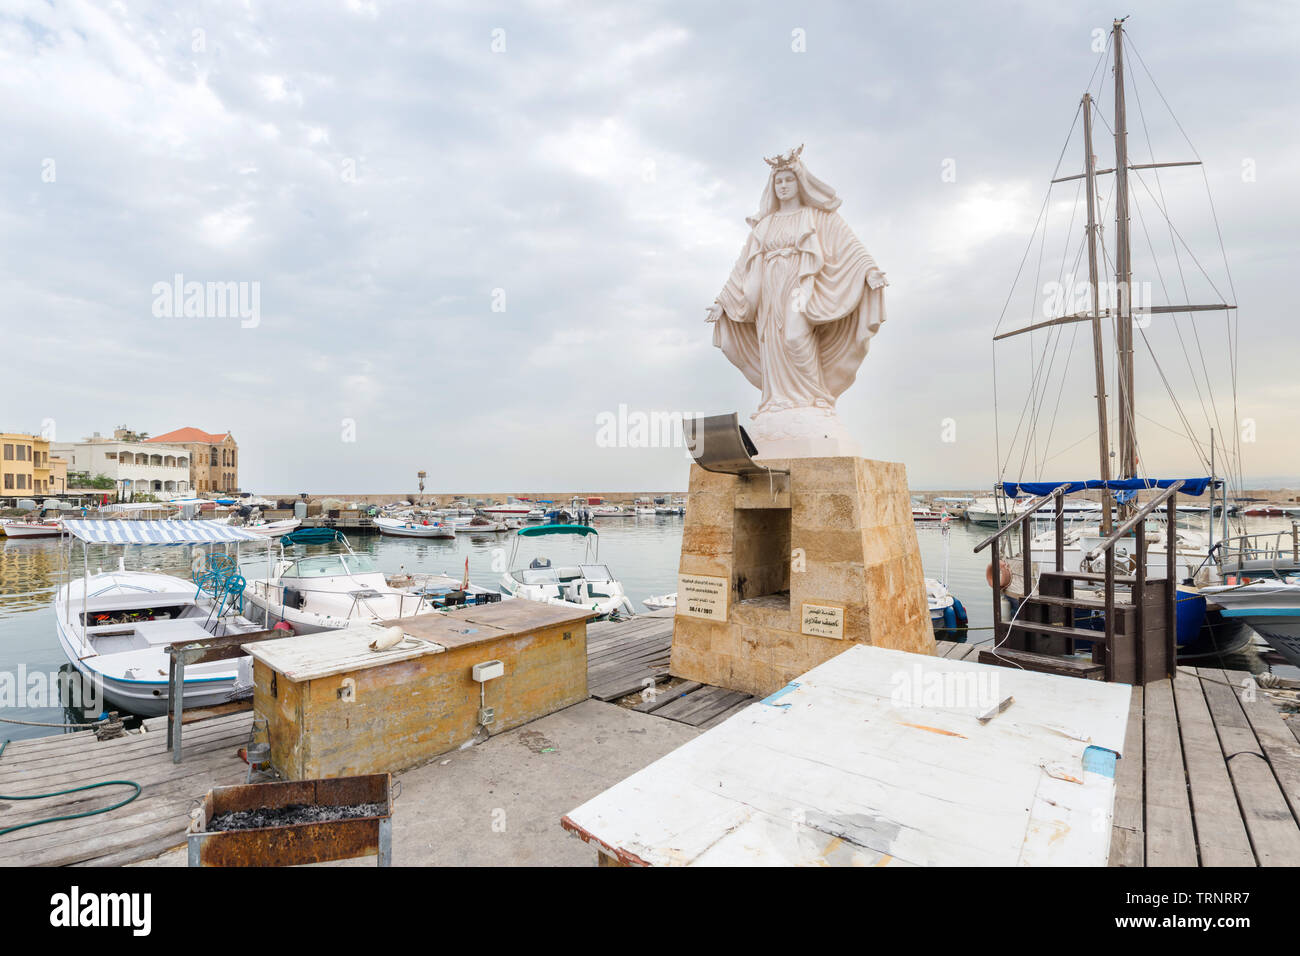 Vierge Marie statue dans le port de pneus, pneu, Liban Banque D'Images